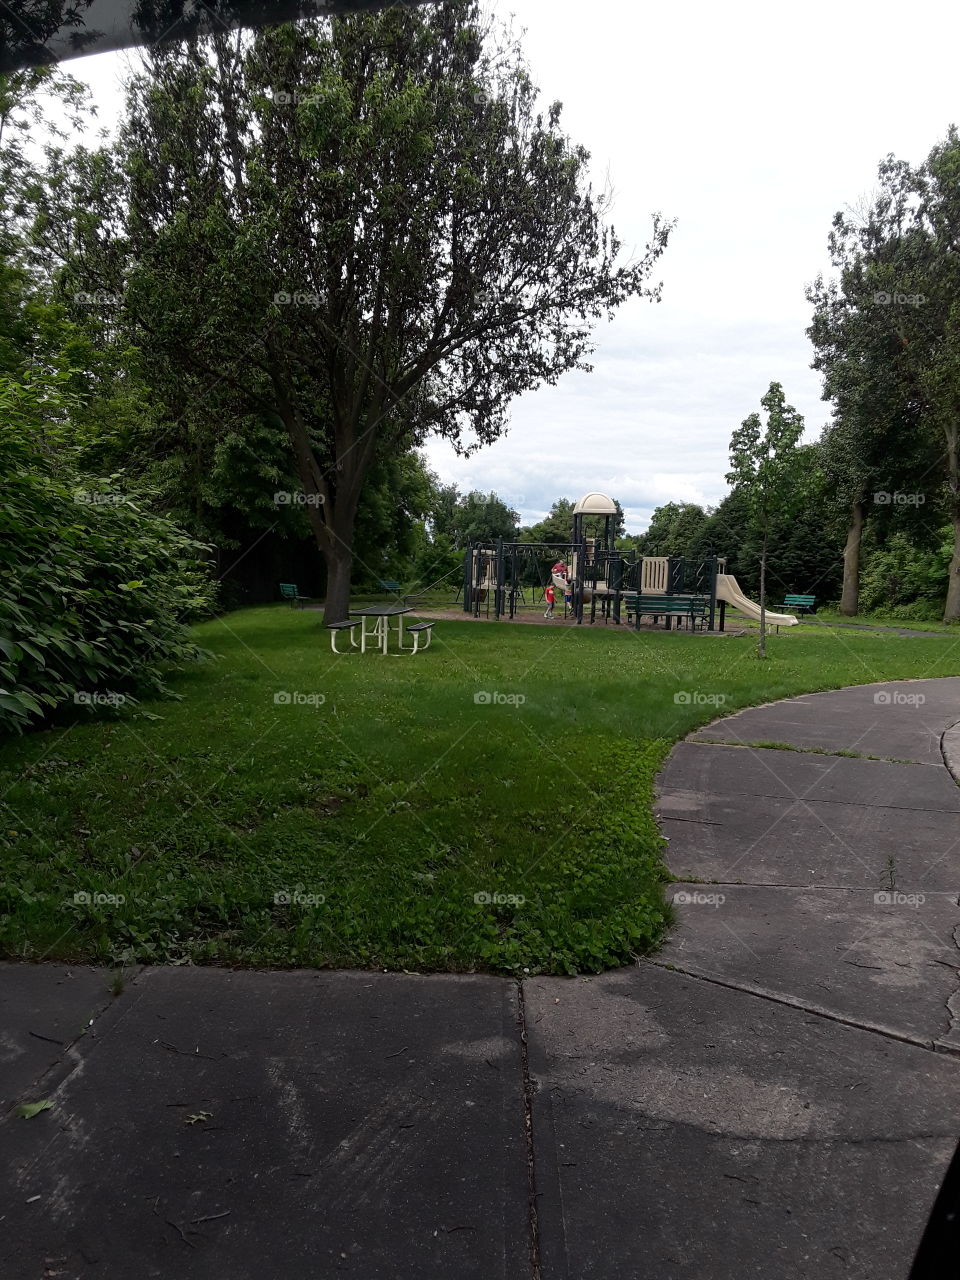 local playground